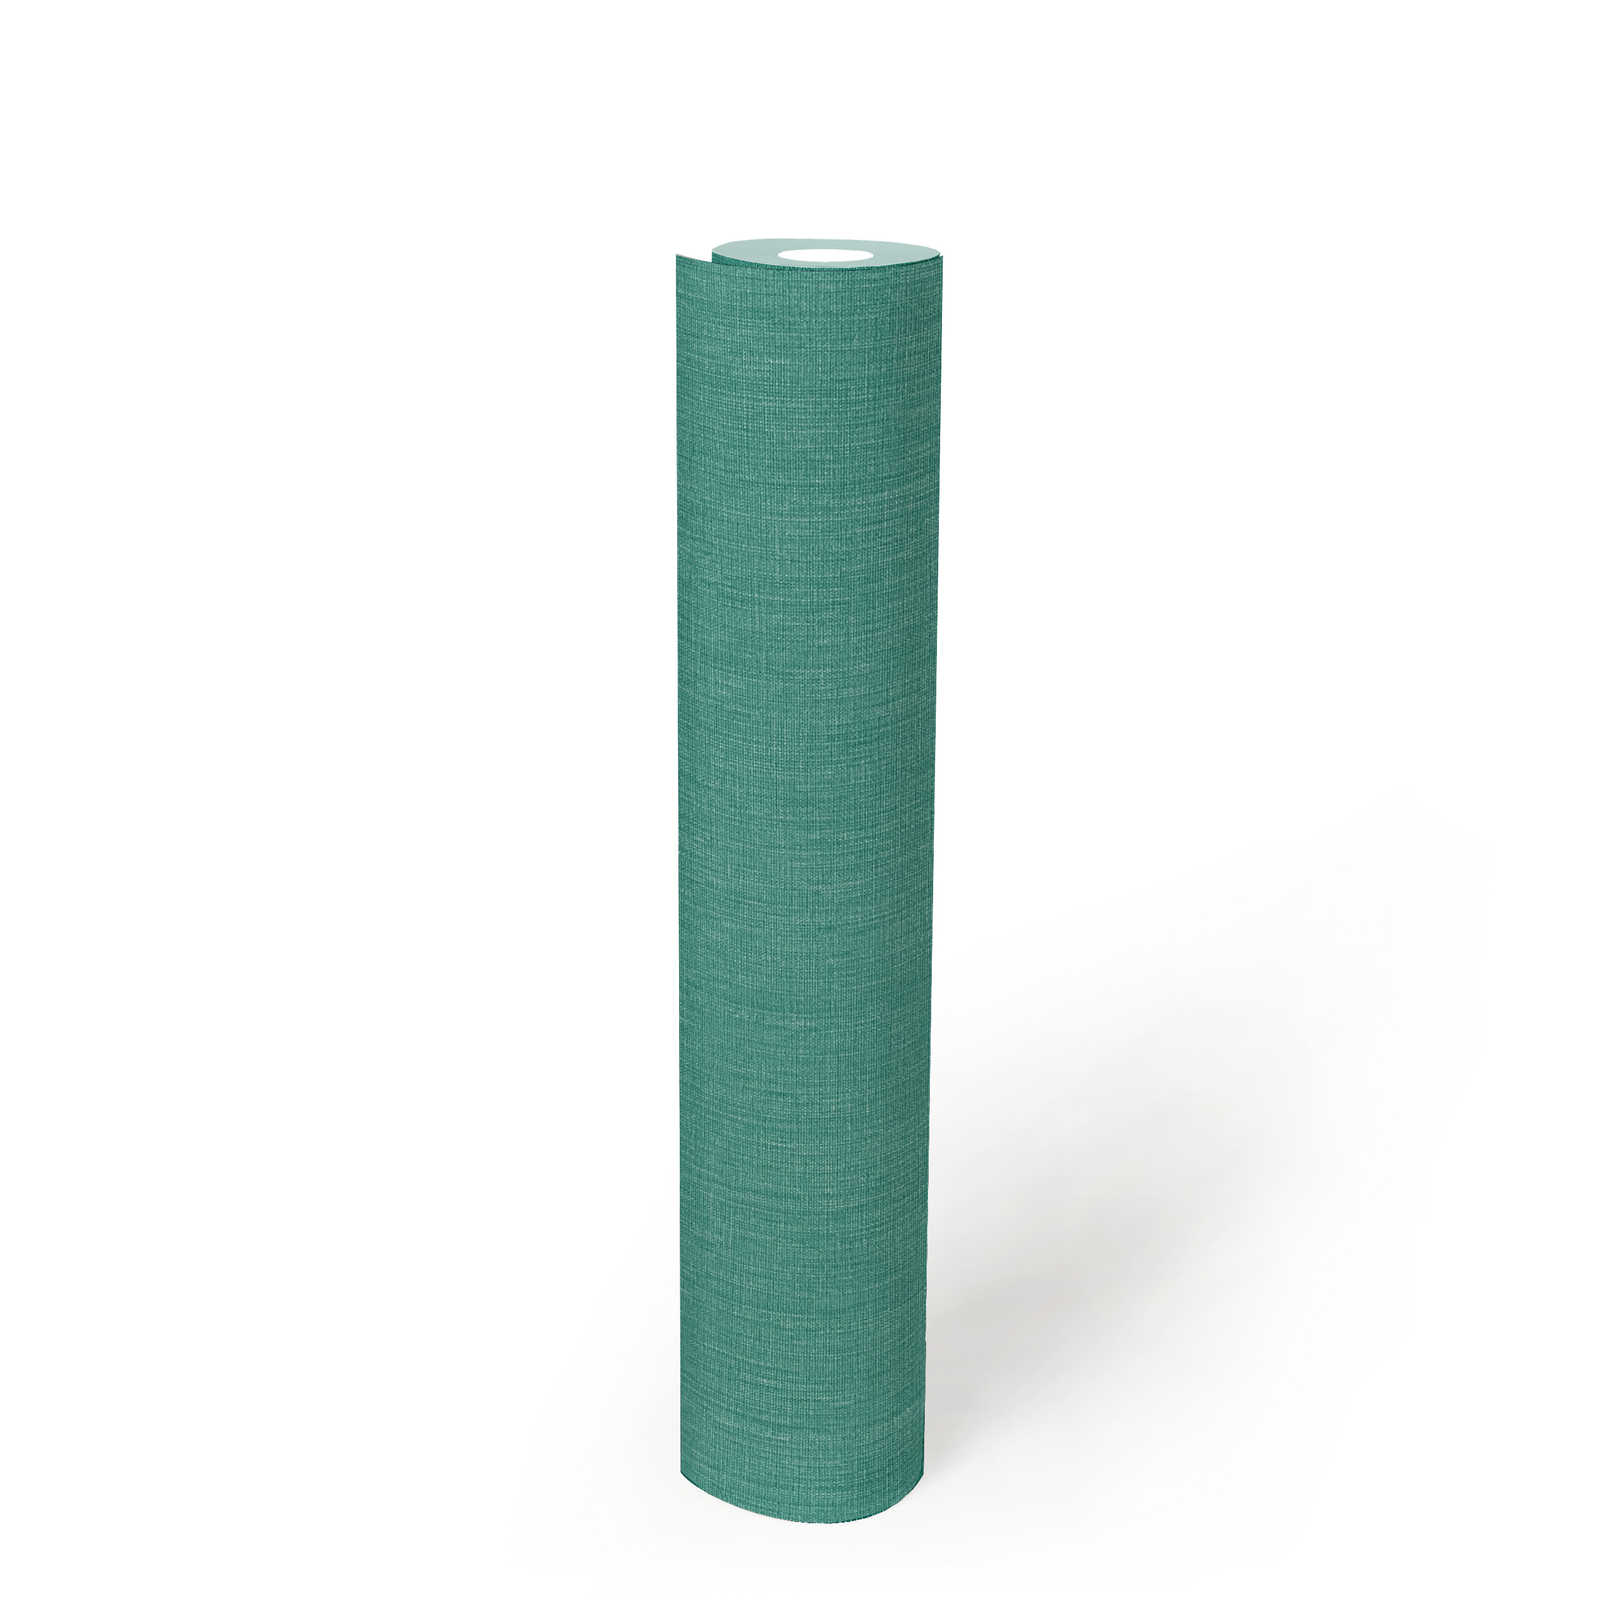             Papel pintado unitario con textura sobre no tejido en aspecto mate - verde, azul
        